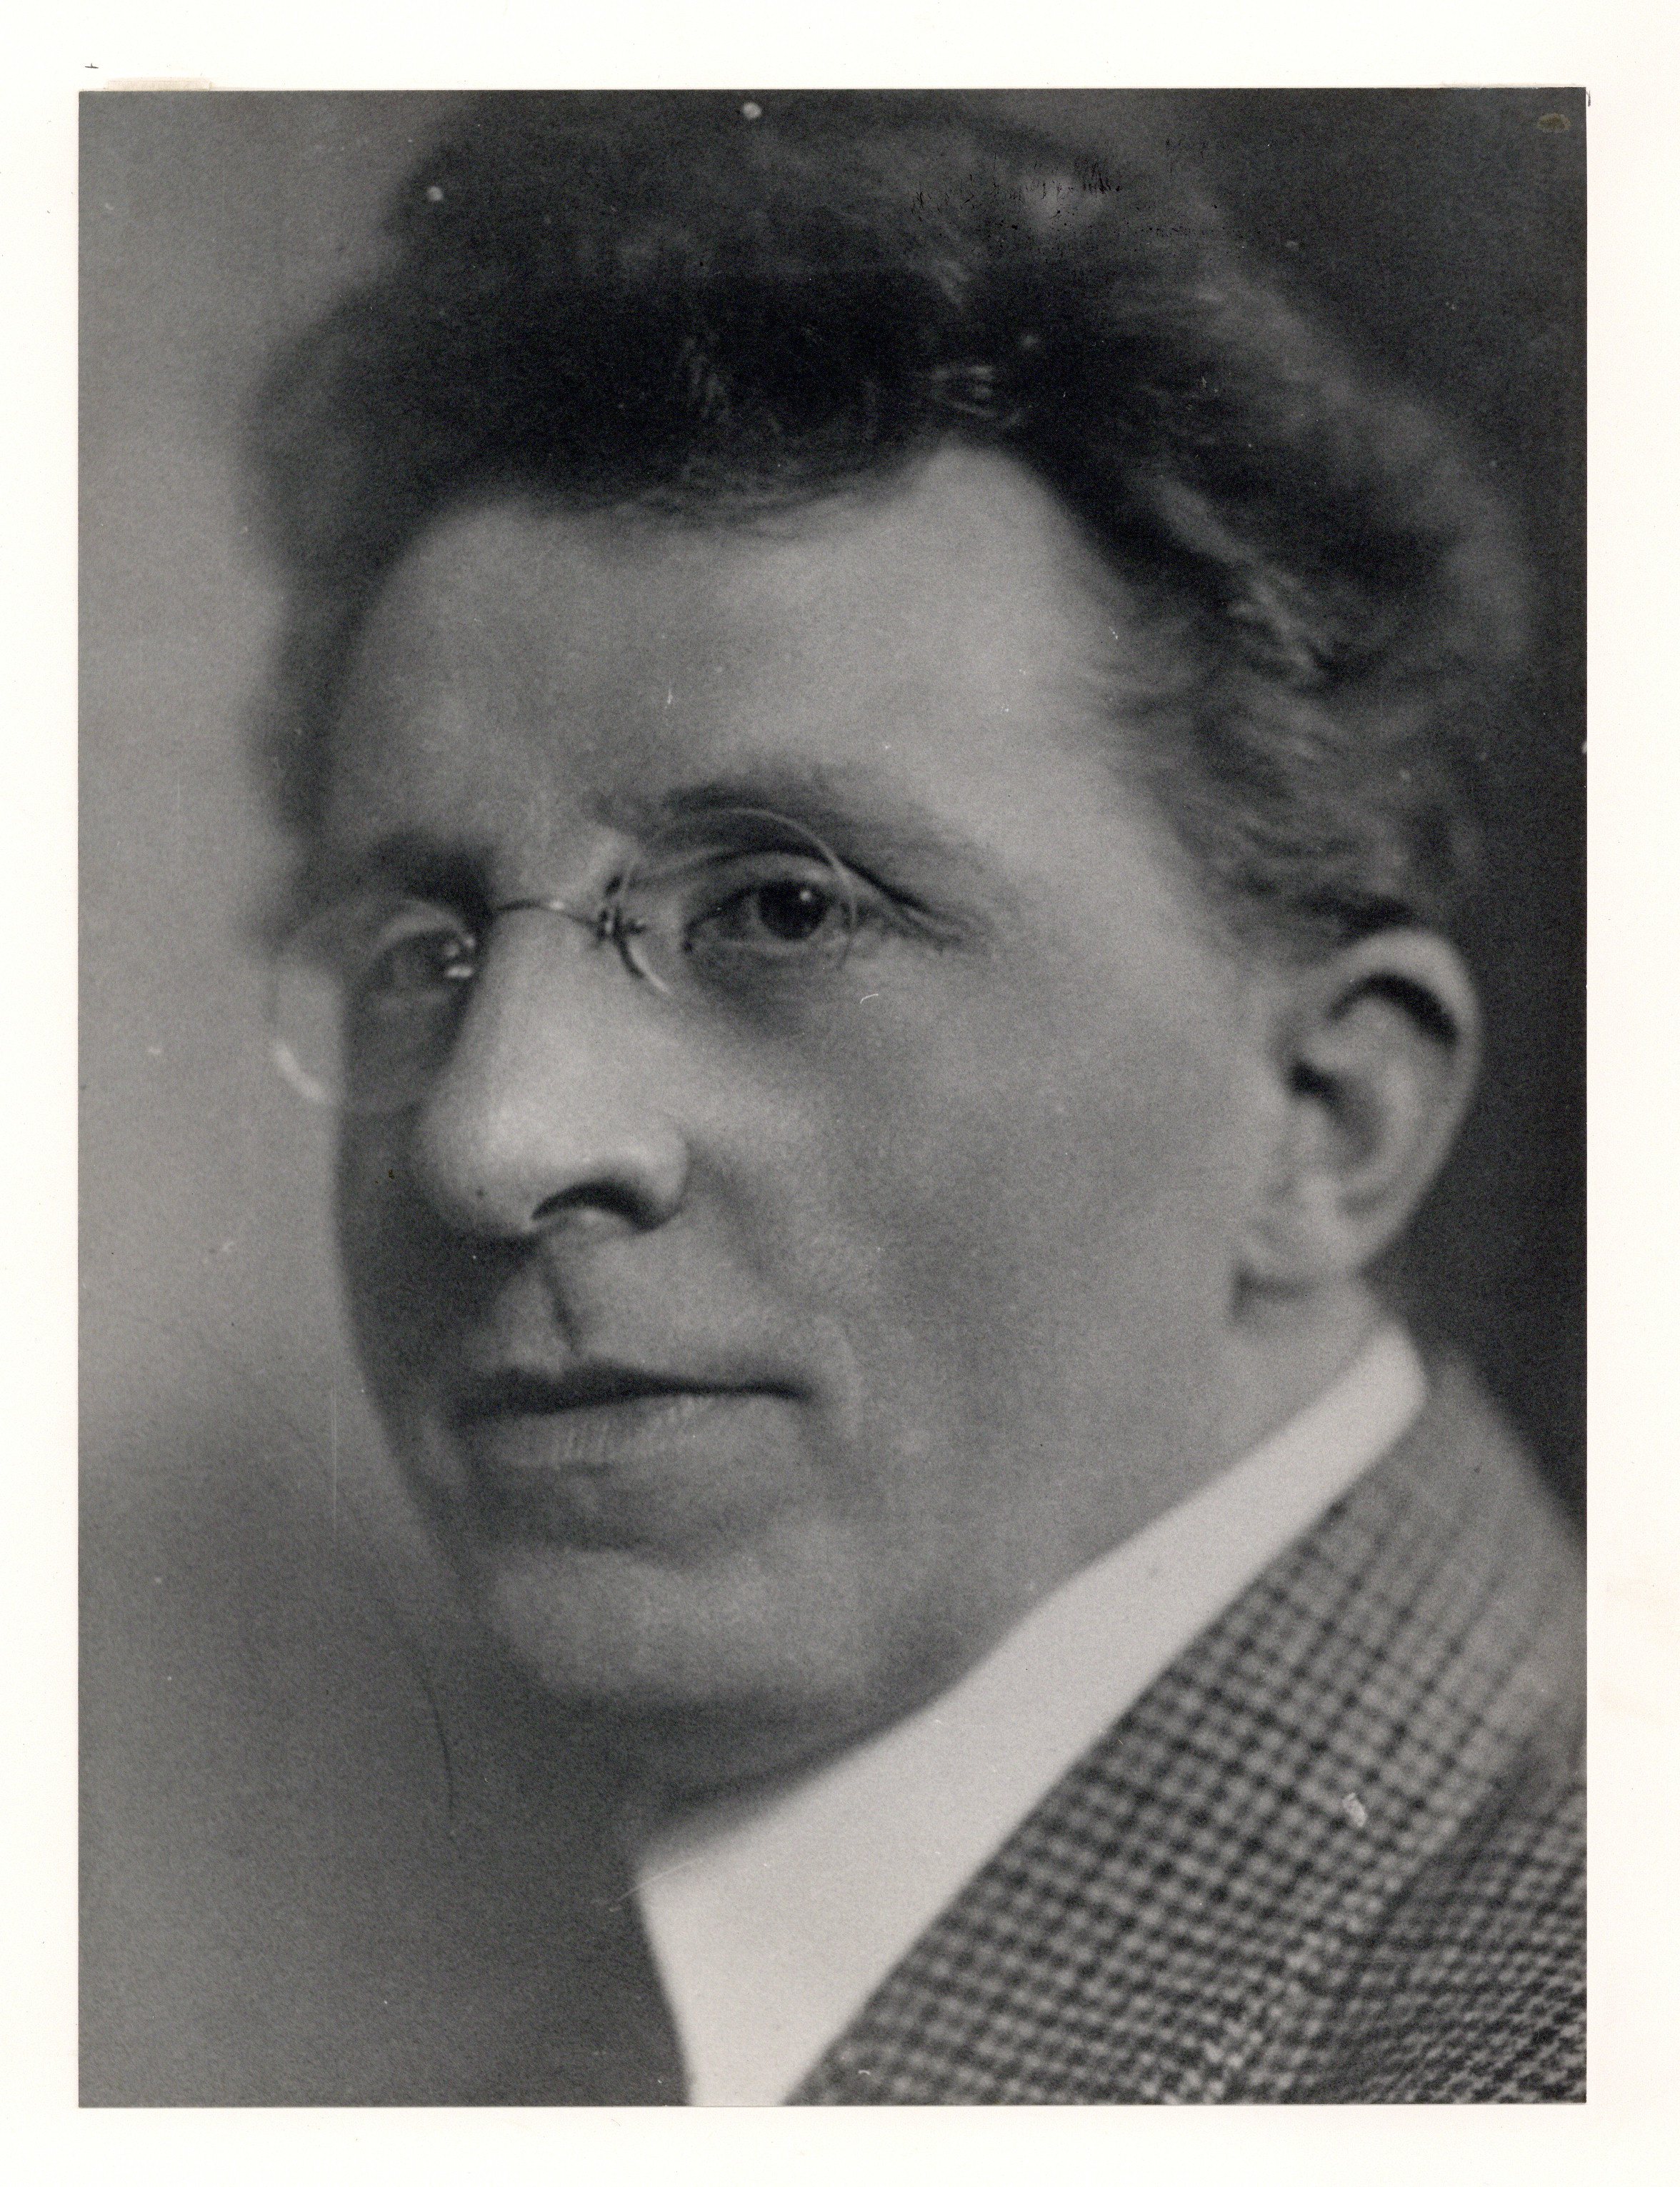 Fritz Wilhelm Stein (Bild)